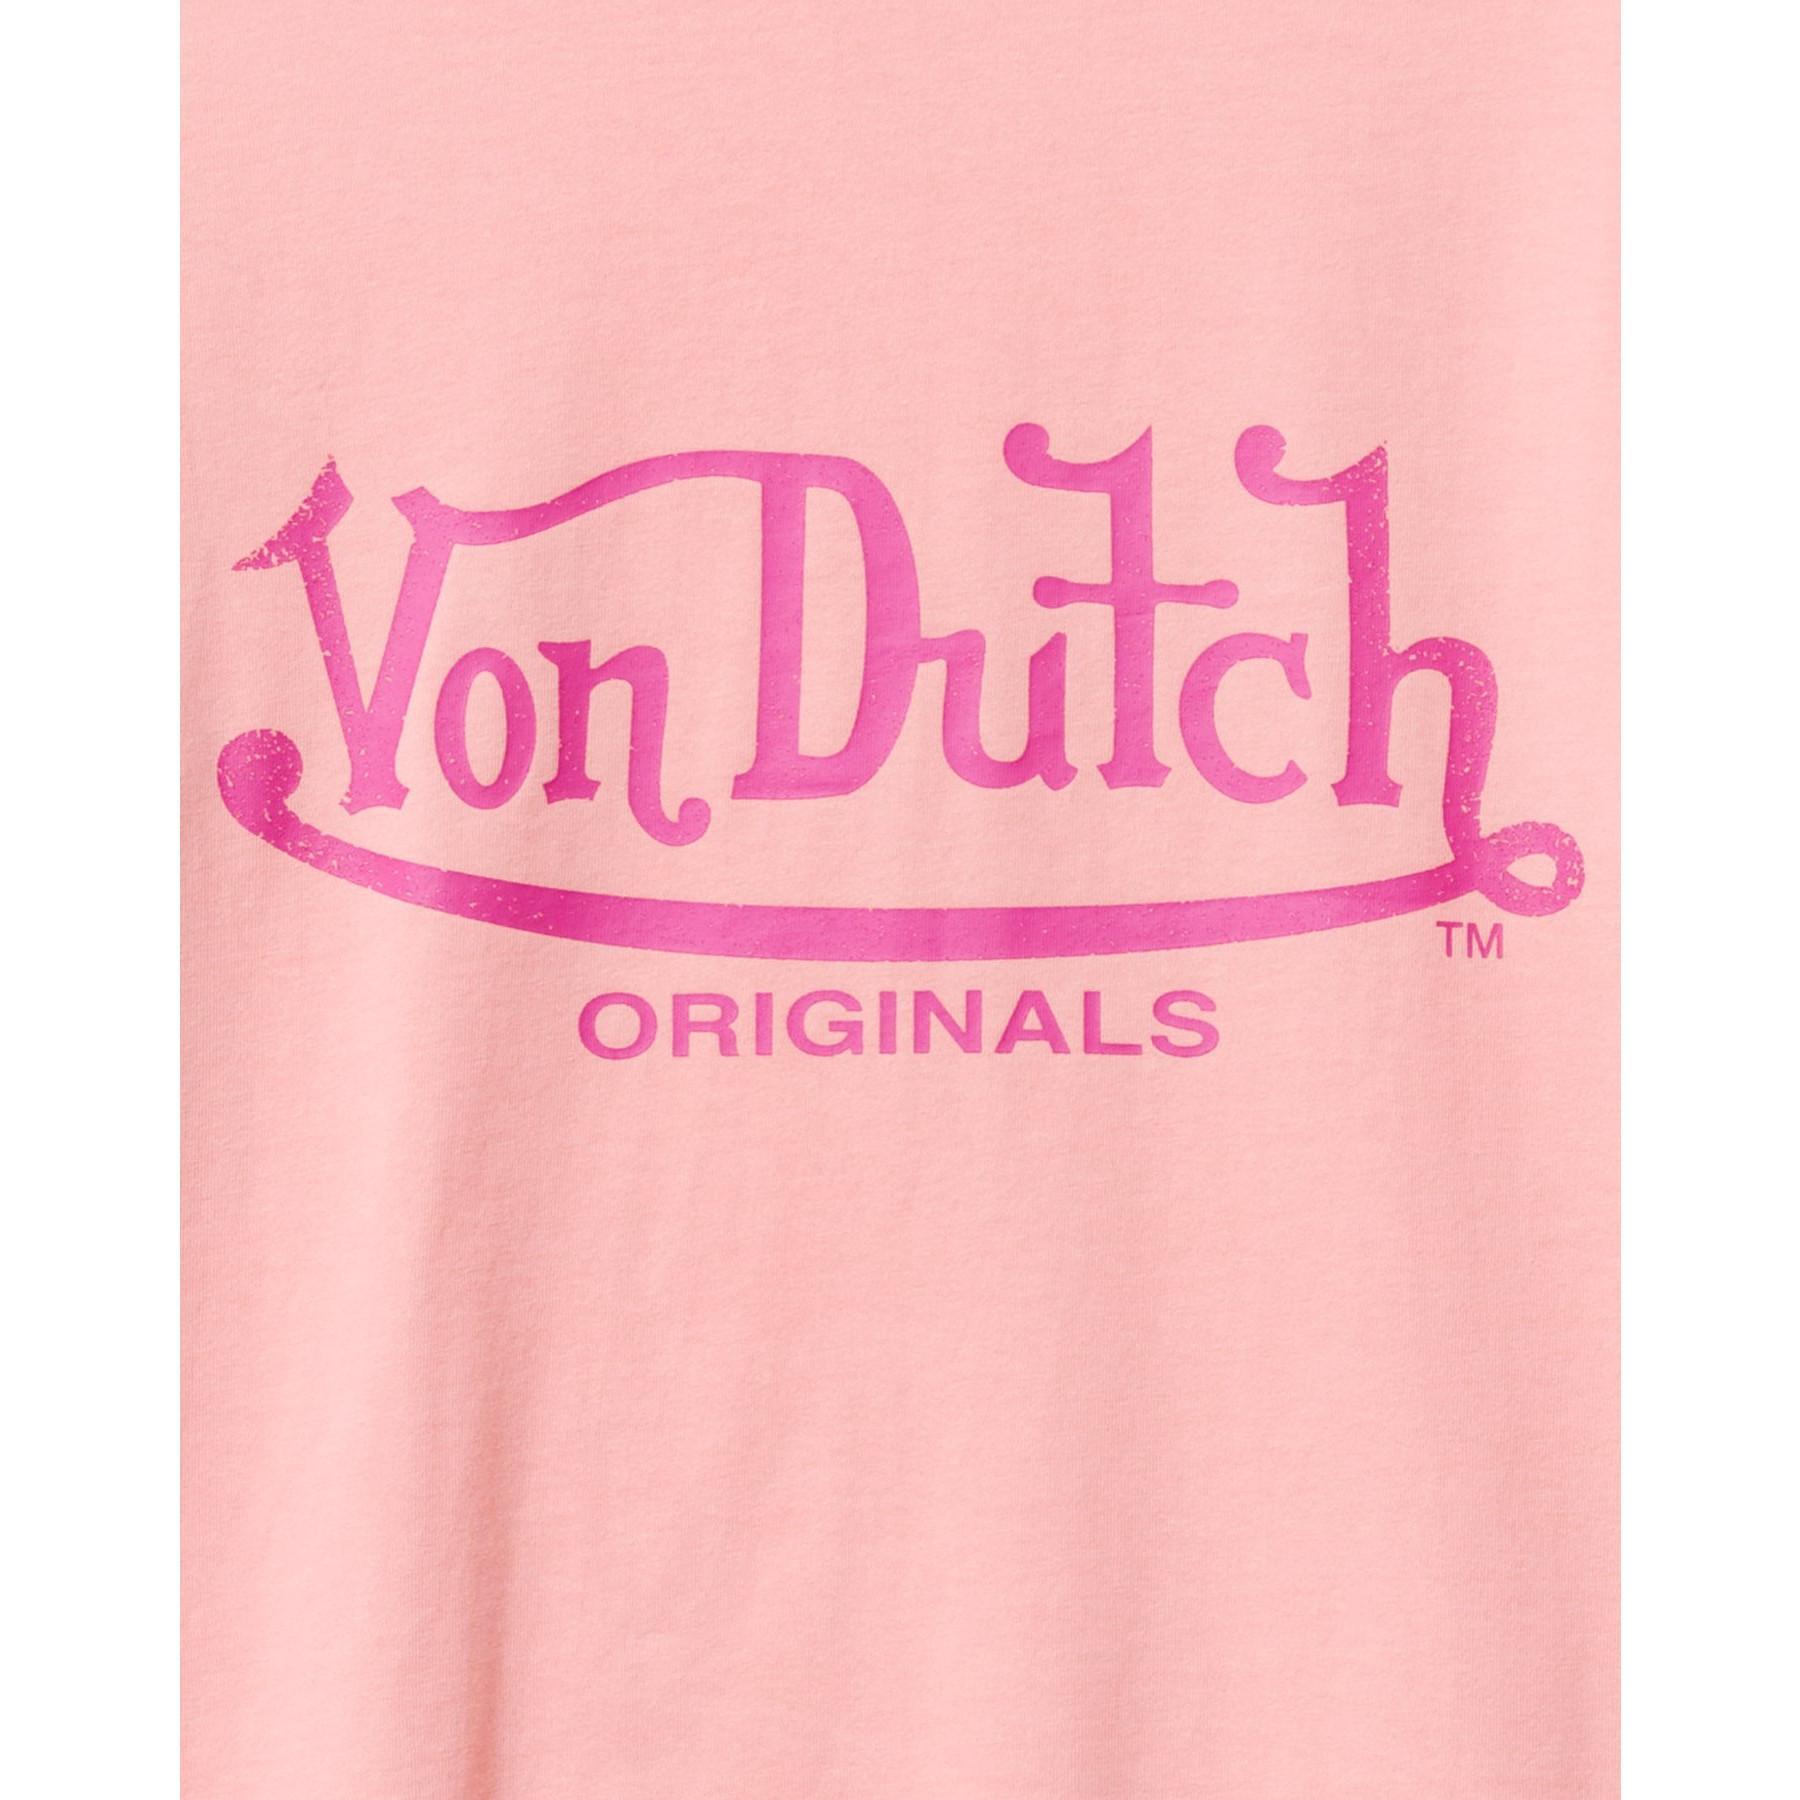 Vrouwen T-shirt Von Dutch Alexis